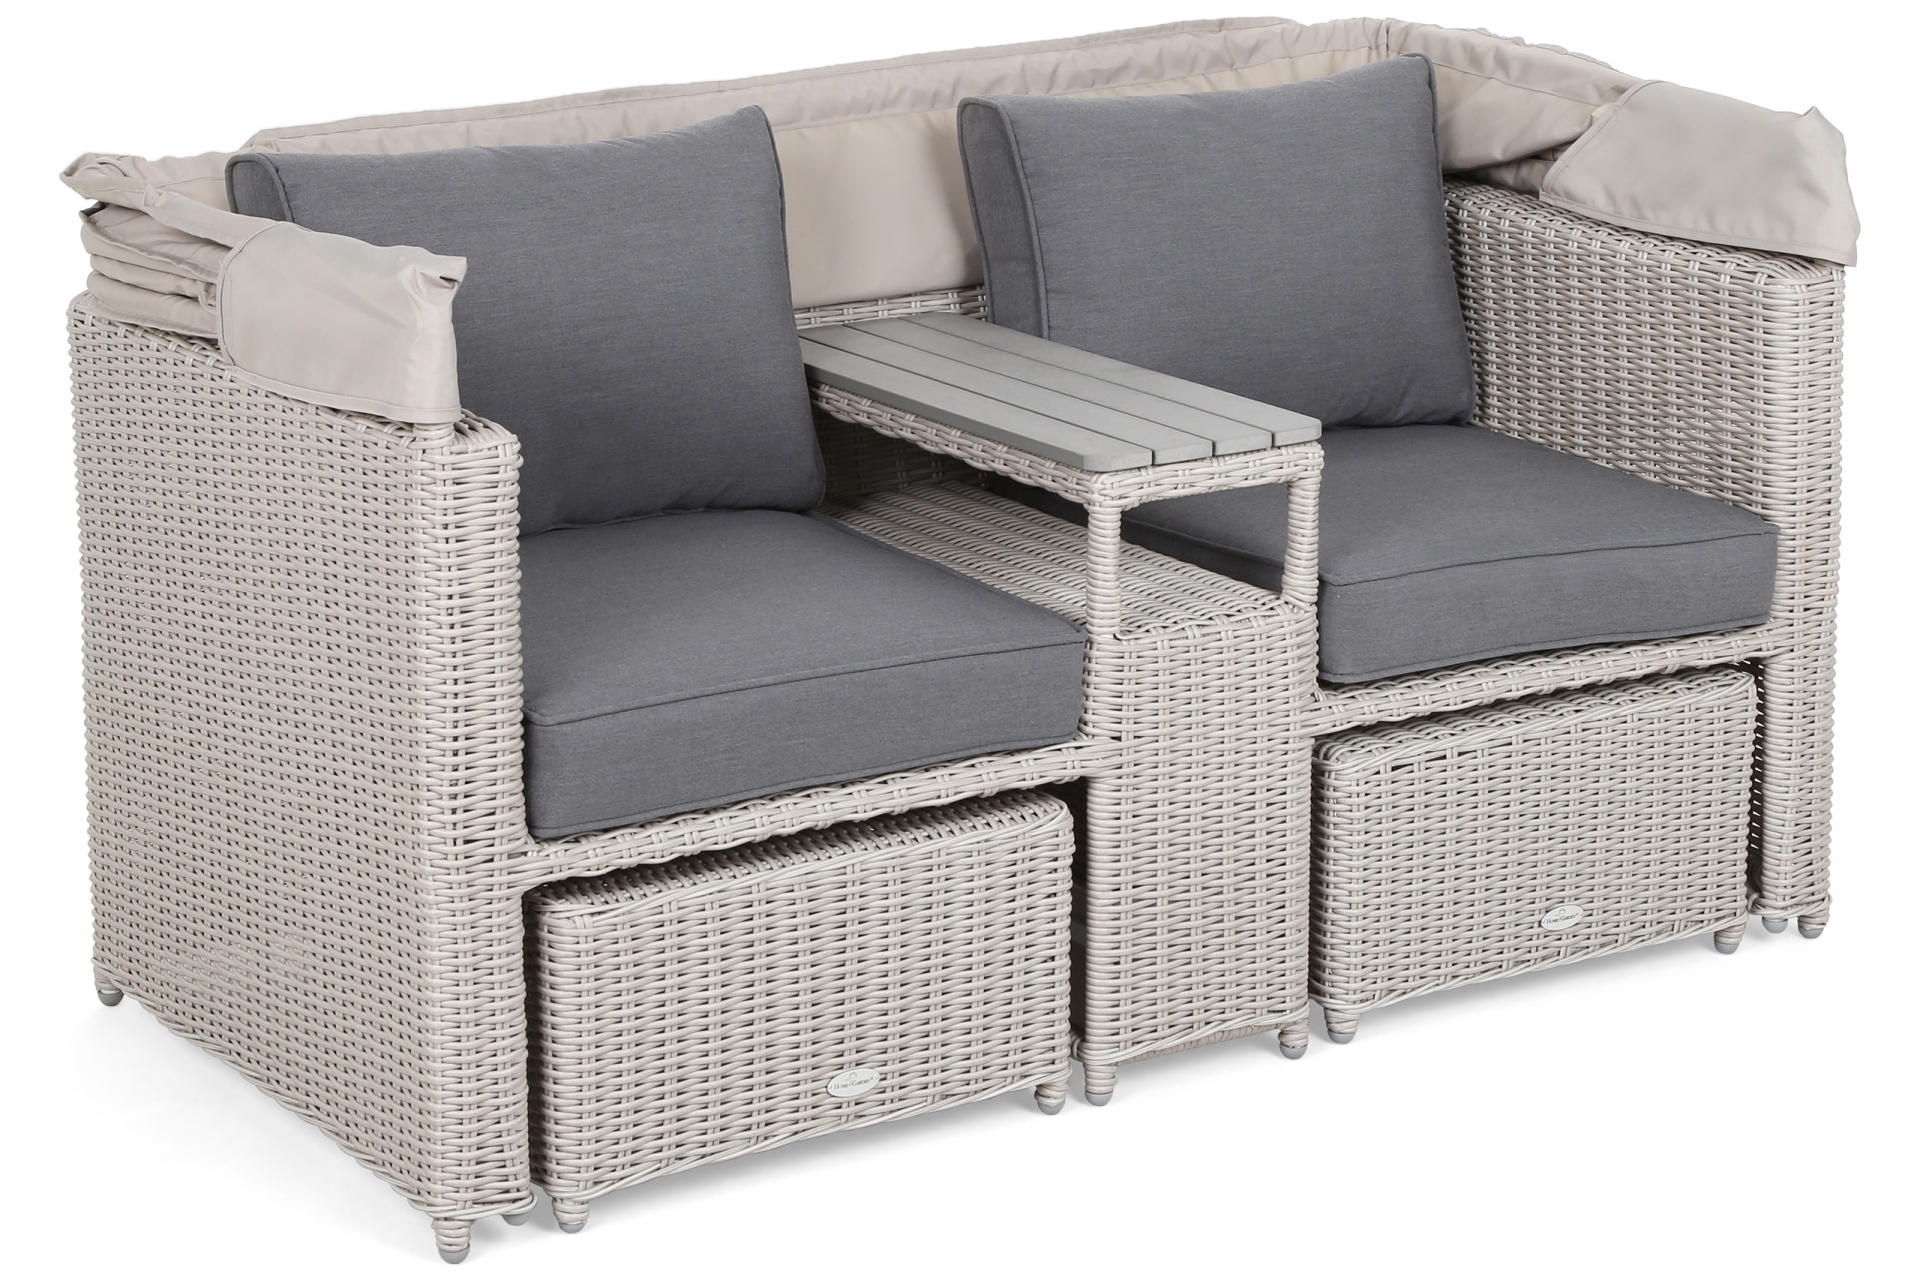 Sofa ogrodowa z baldachimem Missouri White / Grey